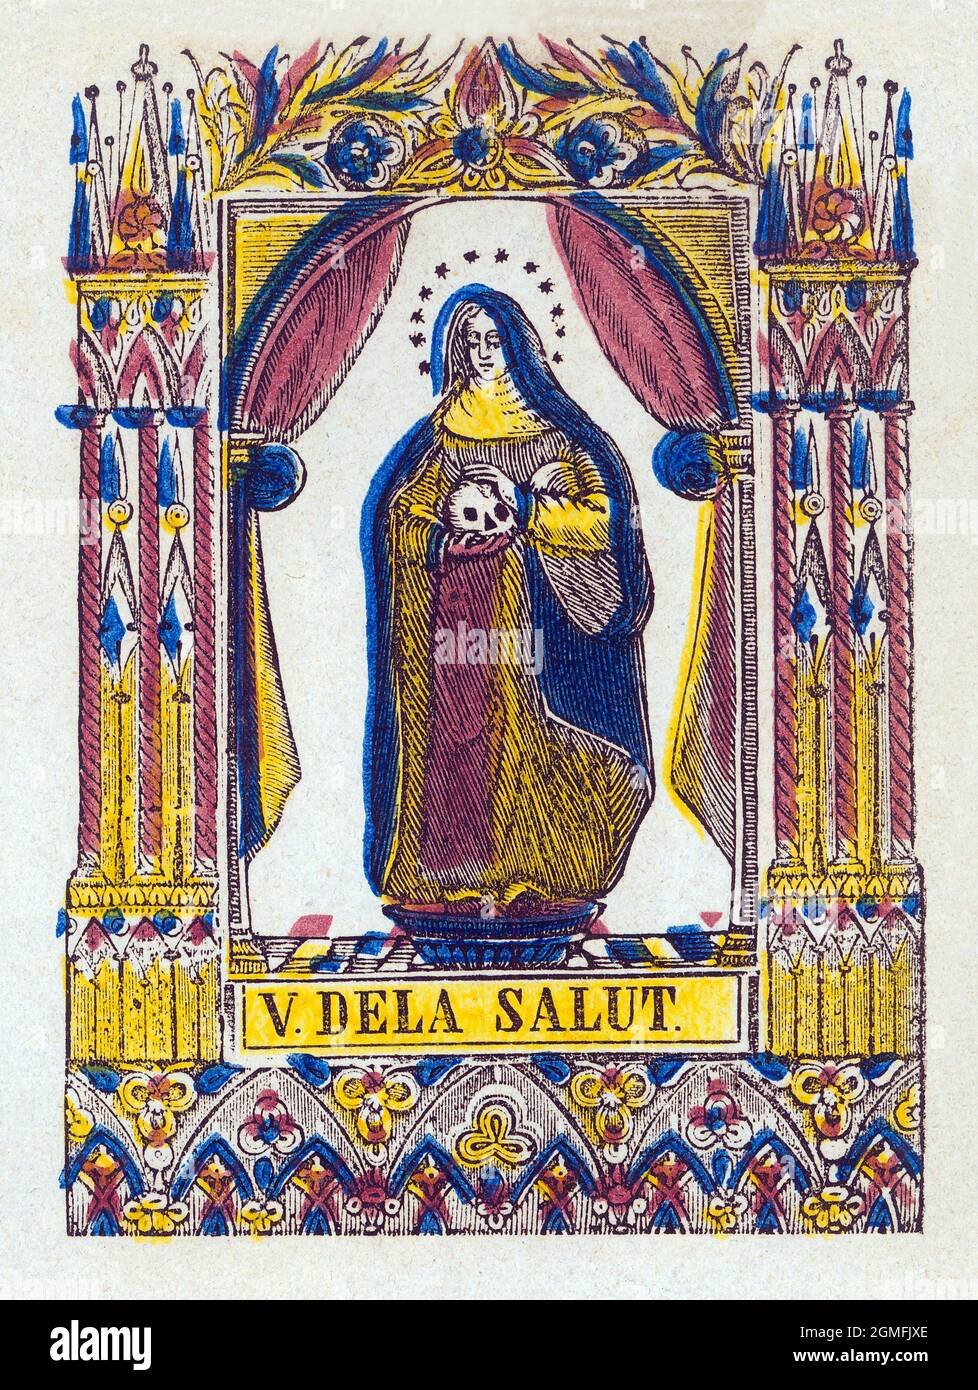 Nuestra Señora Virgen de la Salud o Virgen Niña, advocación de la Virgen María. Estamperia popular del siglo XIX pintado a mano. Stock Photo